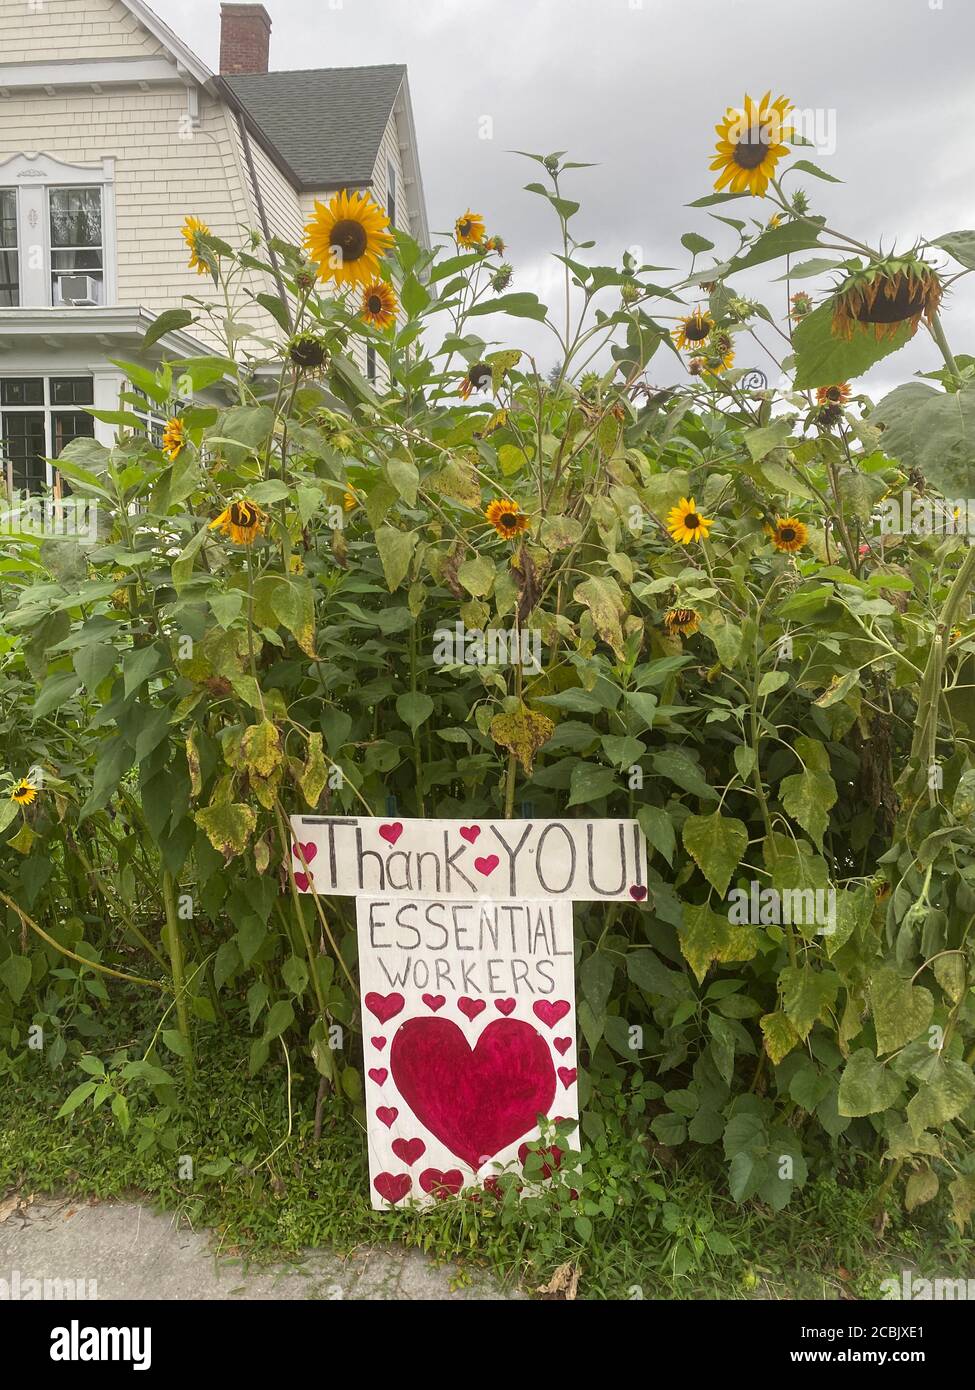 Hausbesitzer zeigen ihre Wertschätzung in ihrem Vorgarten für "wesentliche Arbeiter" während der Covid-19 Pandemie in einer Wohnstraße in Brooklyn, New York. Stockfoto